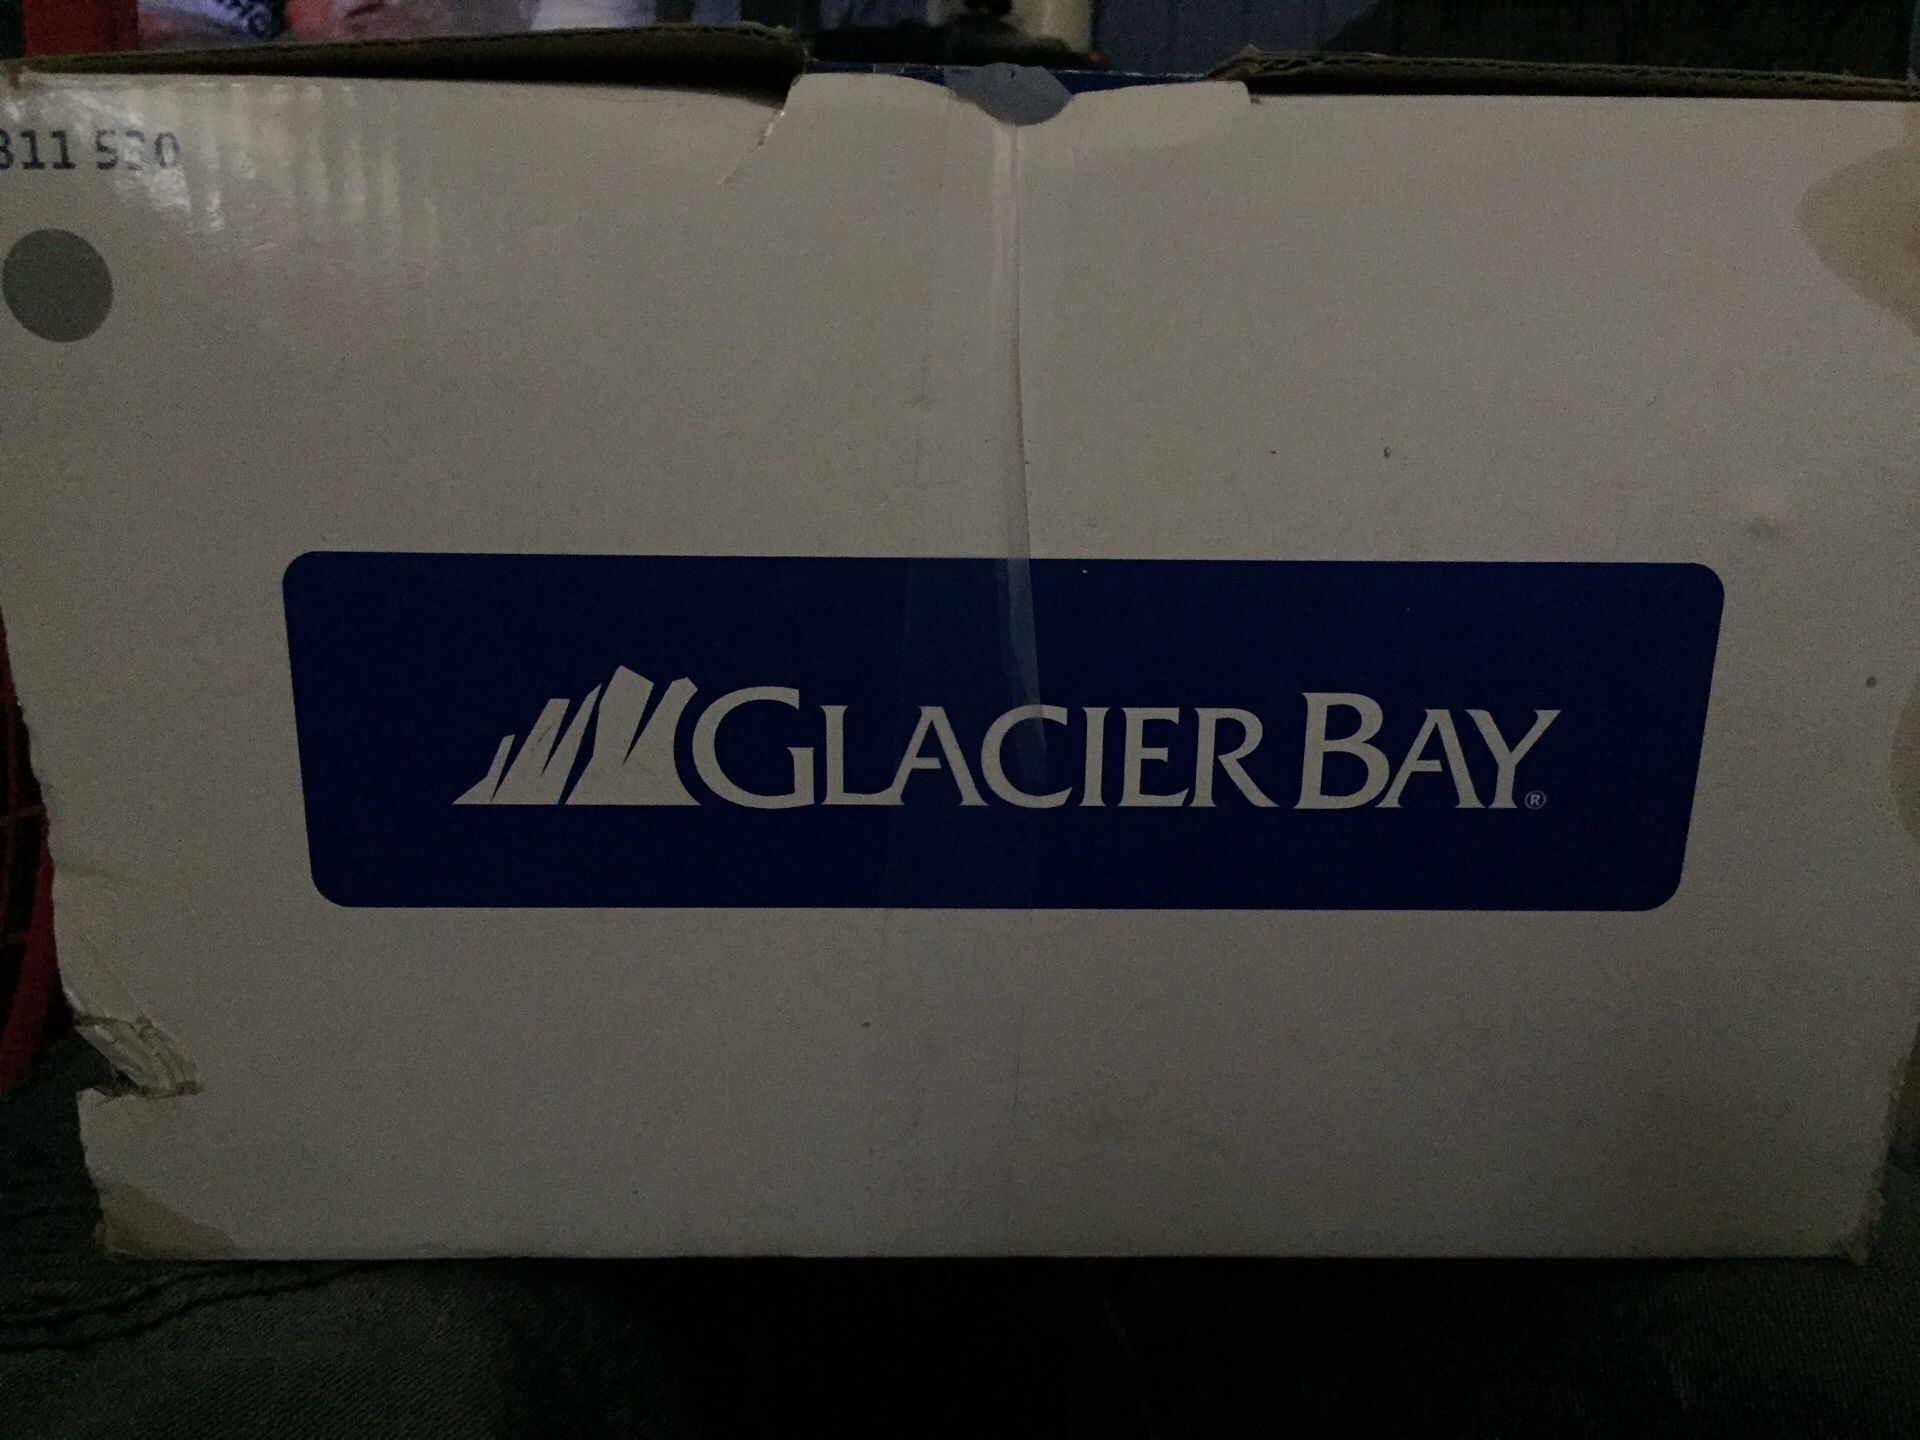 Glacier bay bath faucet